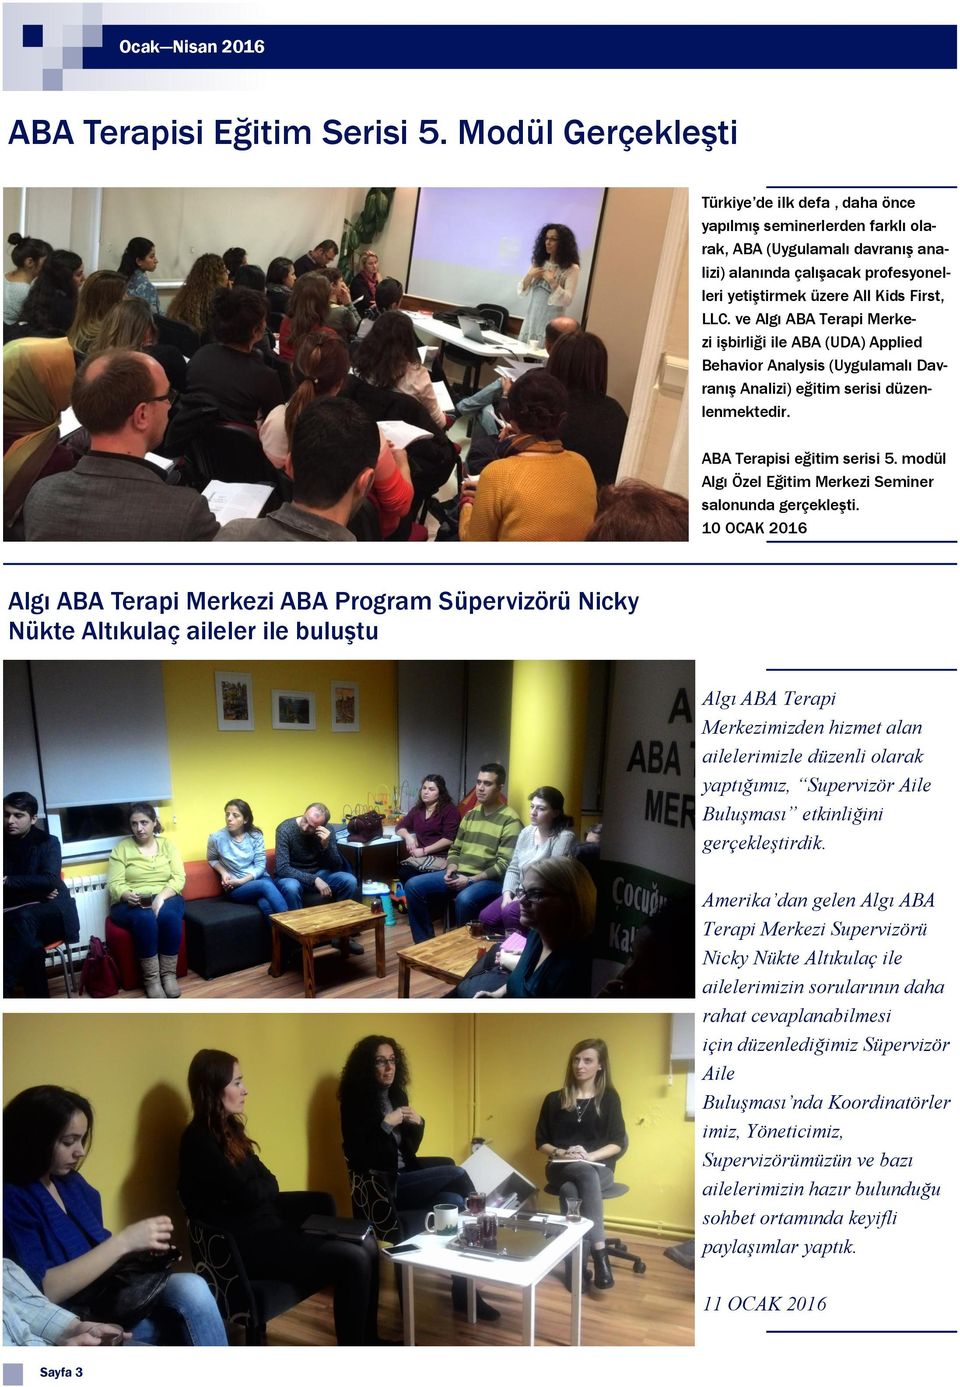 ve Algı ABA Terapi Merkezi işbirliği ile ABA (UDA) Applied Behavior Analysis (Uygulamalı Davranış Analizi) eğitim serisi düzenlenmektedir. ABA Terapisi eğitim serisi 5.